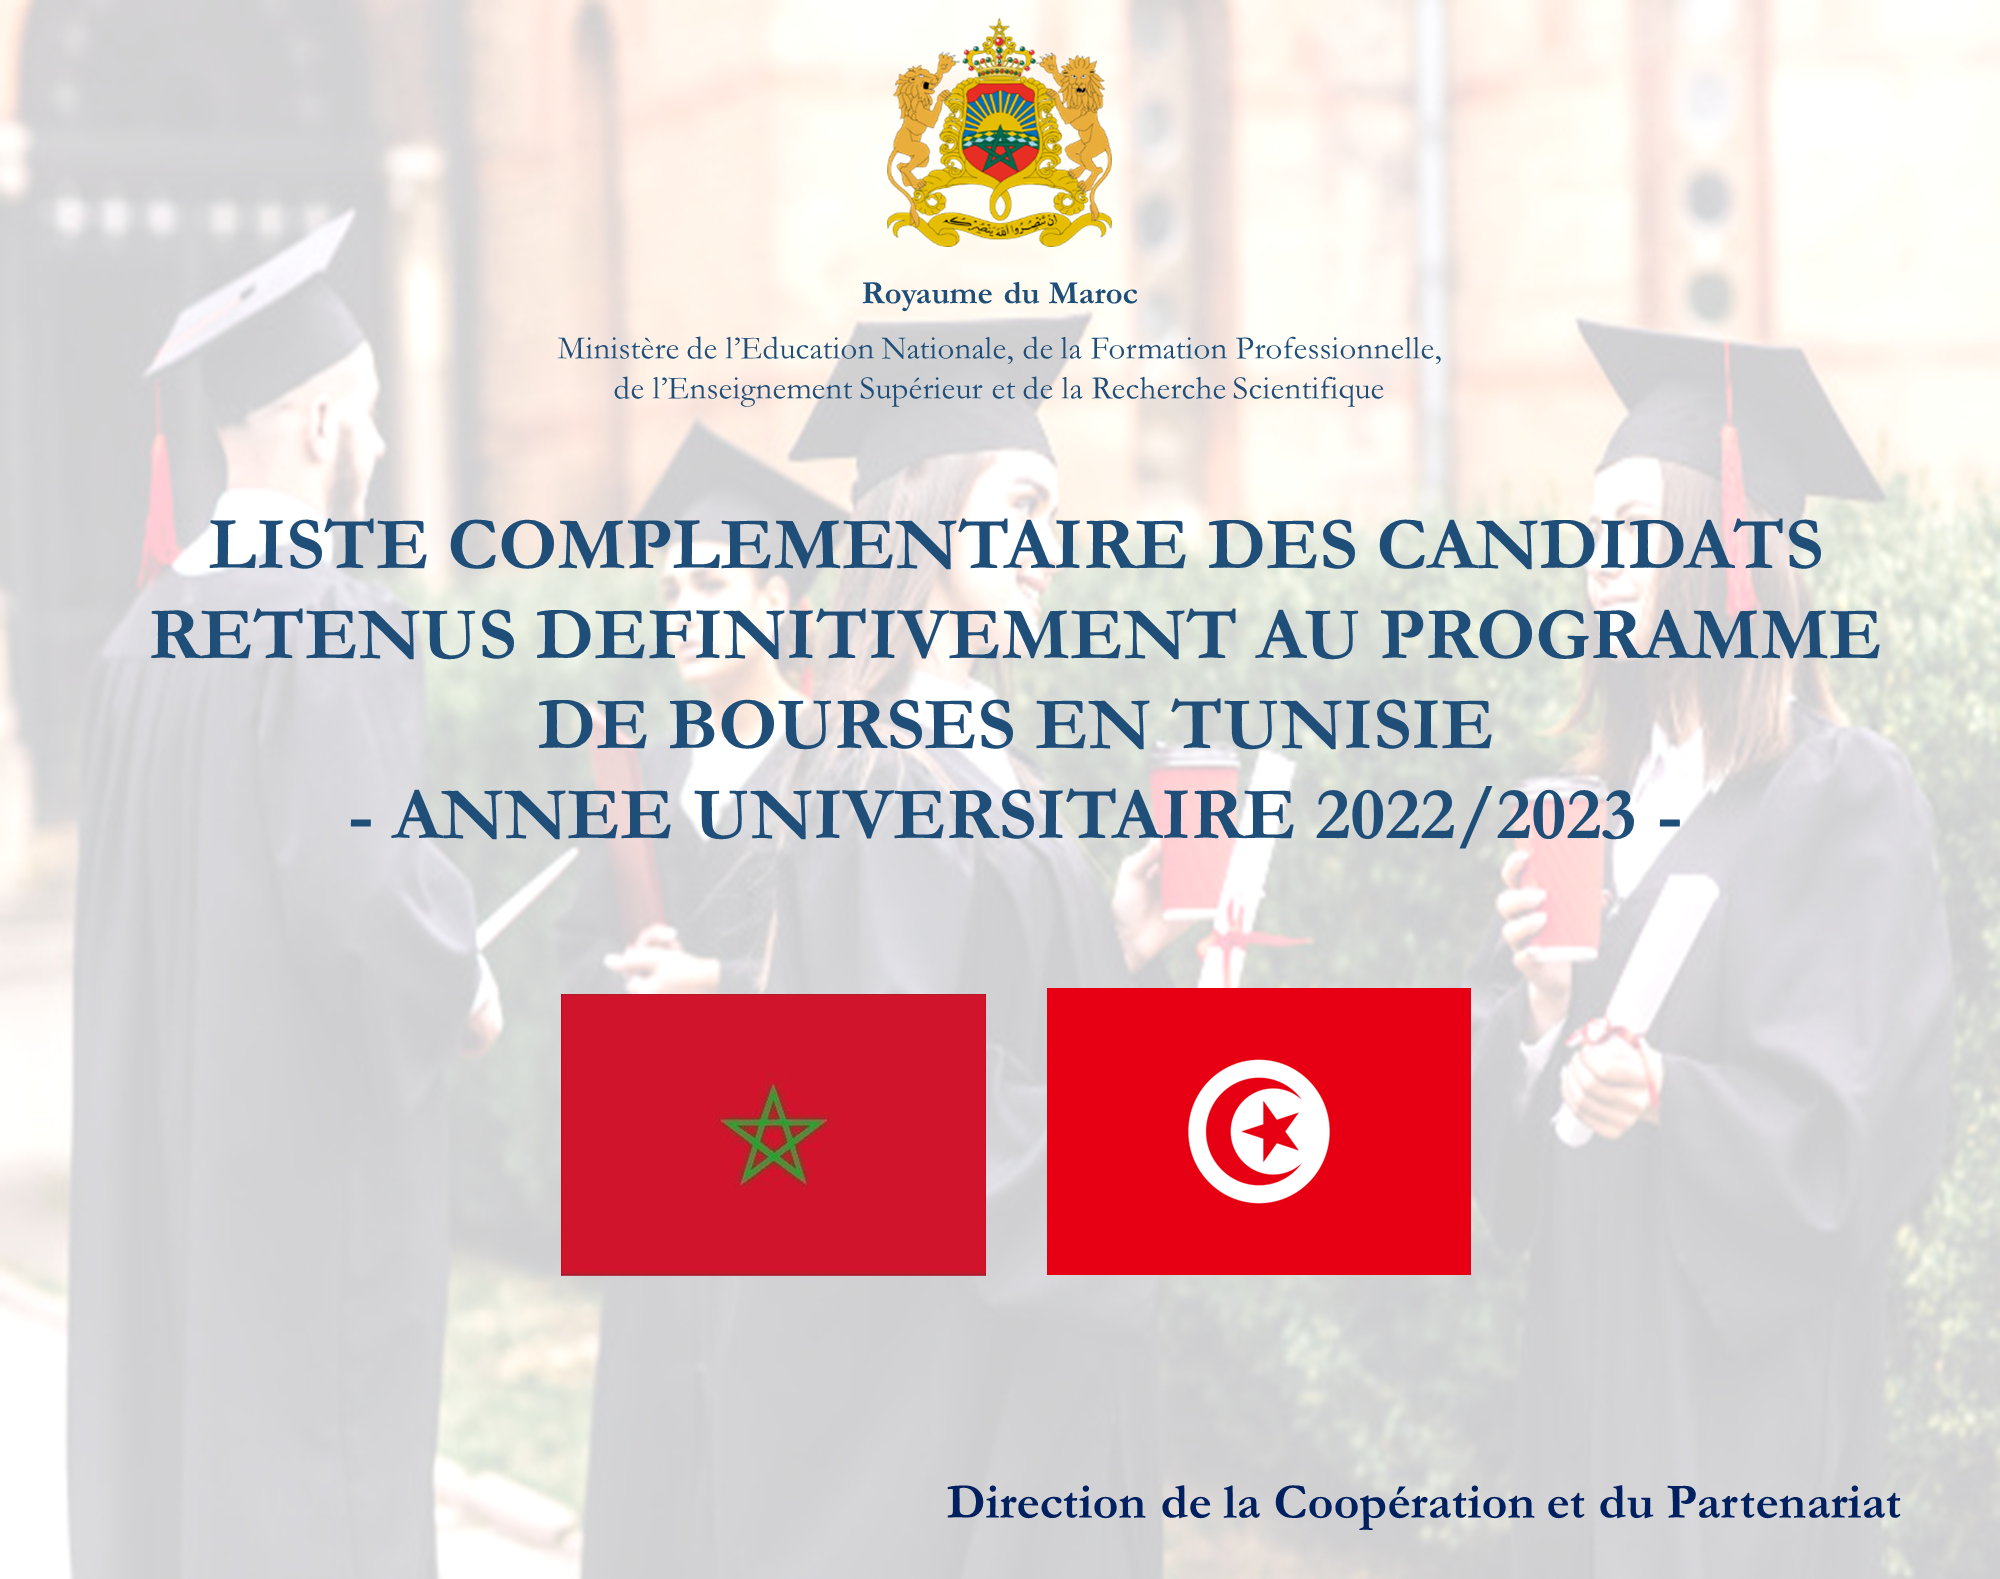 TUNISIE res